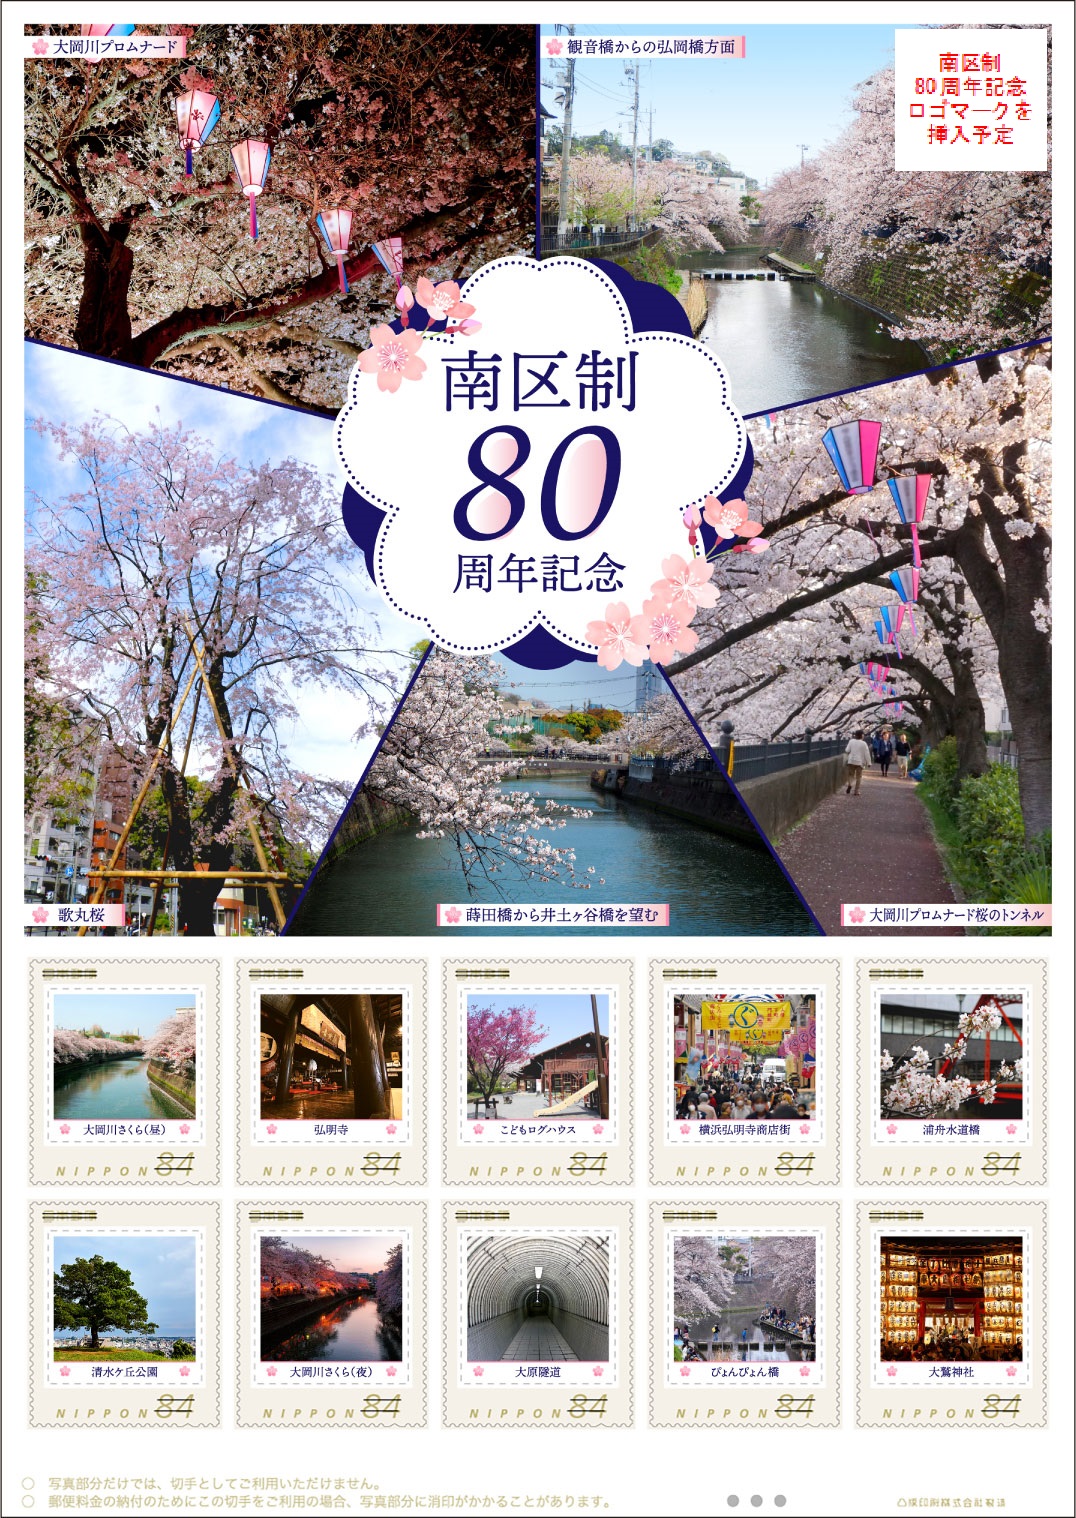 オリジナル フレーム切手 横浜市「南区制80周年記念」の販売開始と贈呈式の開催